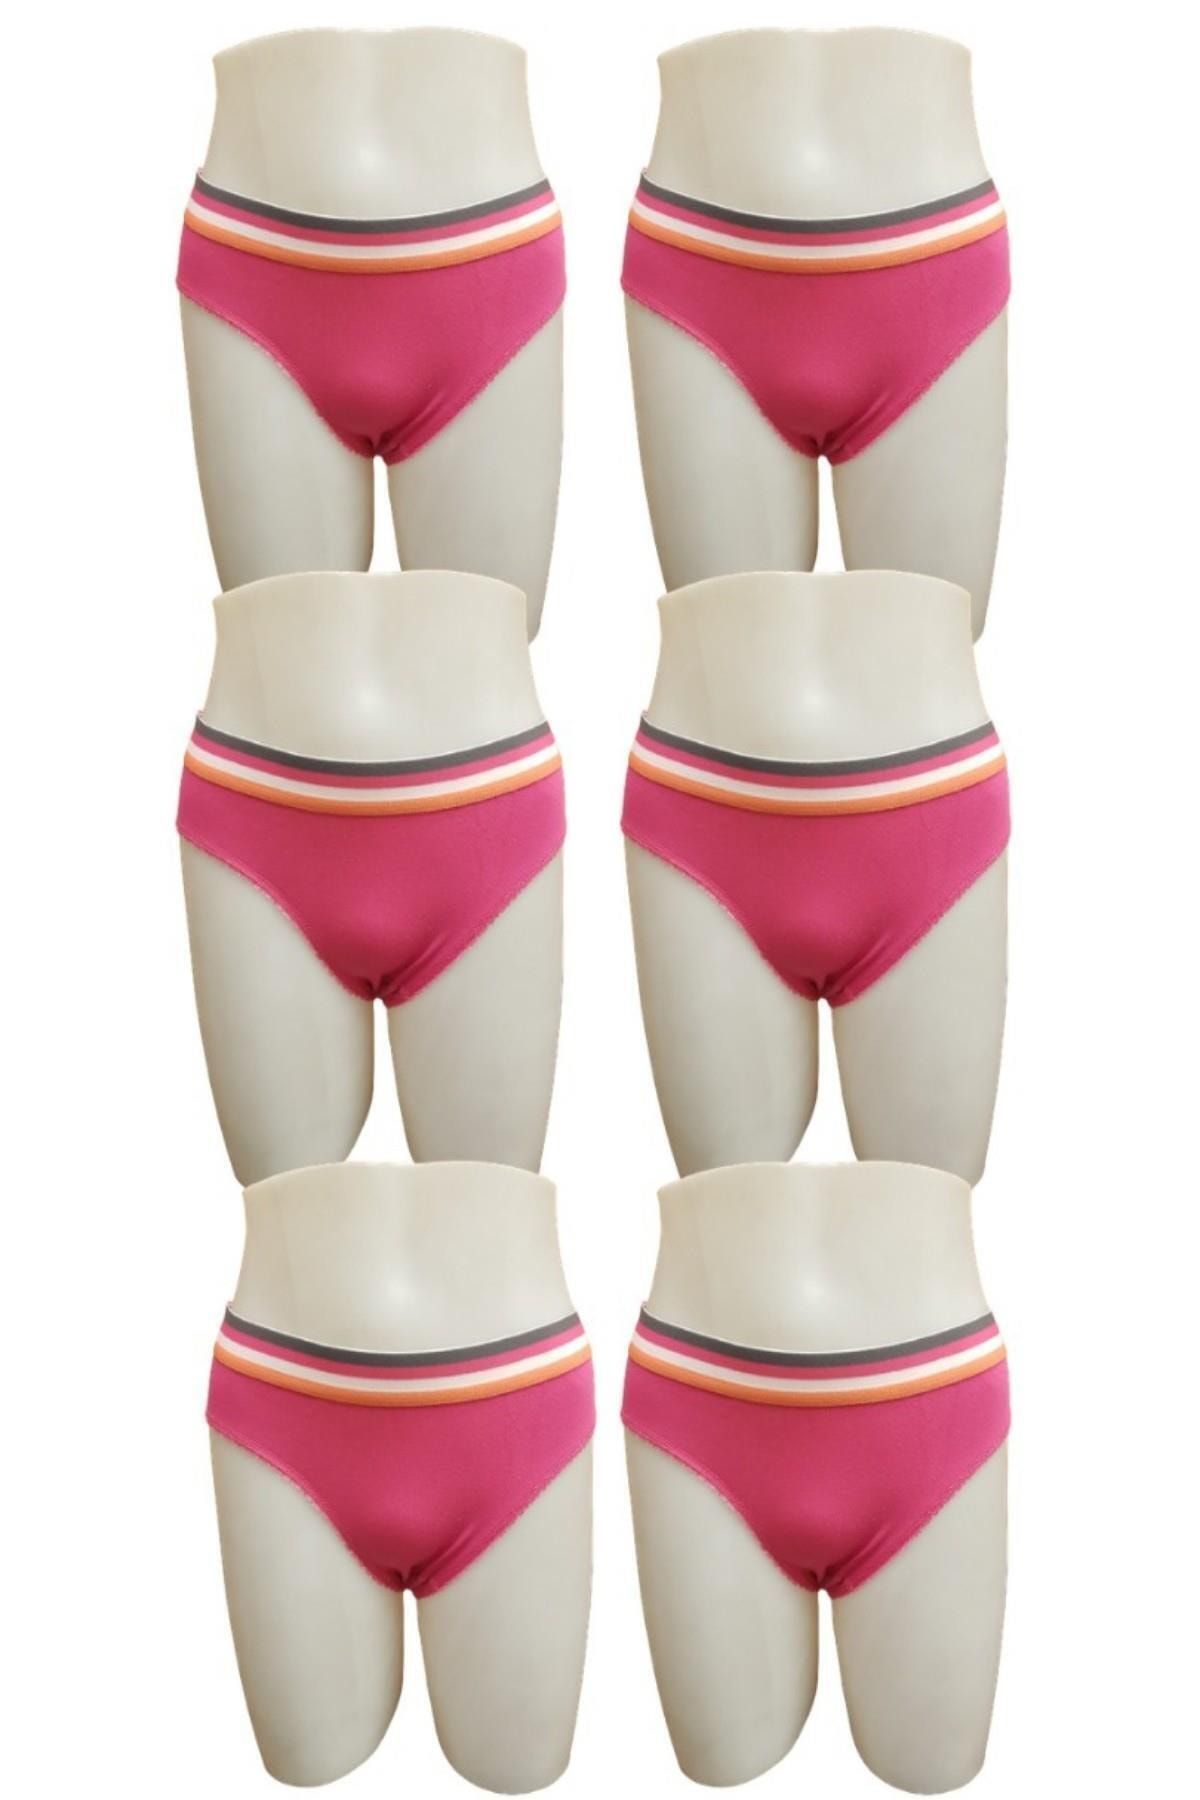 Tutku Kadın Pırlanta 6lı Paket Beli Şerit Detaylı Bikini Külot